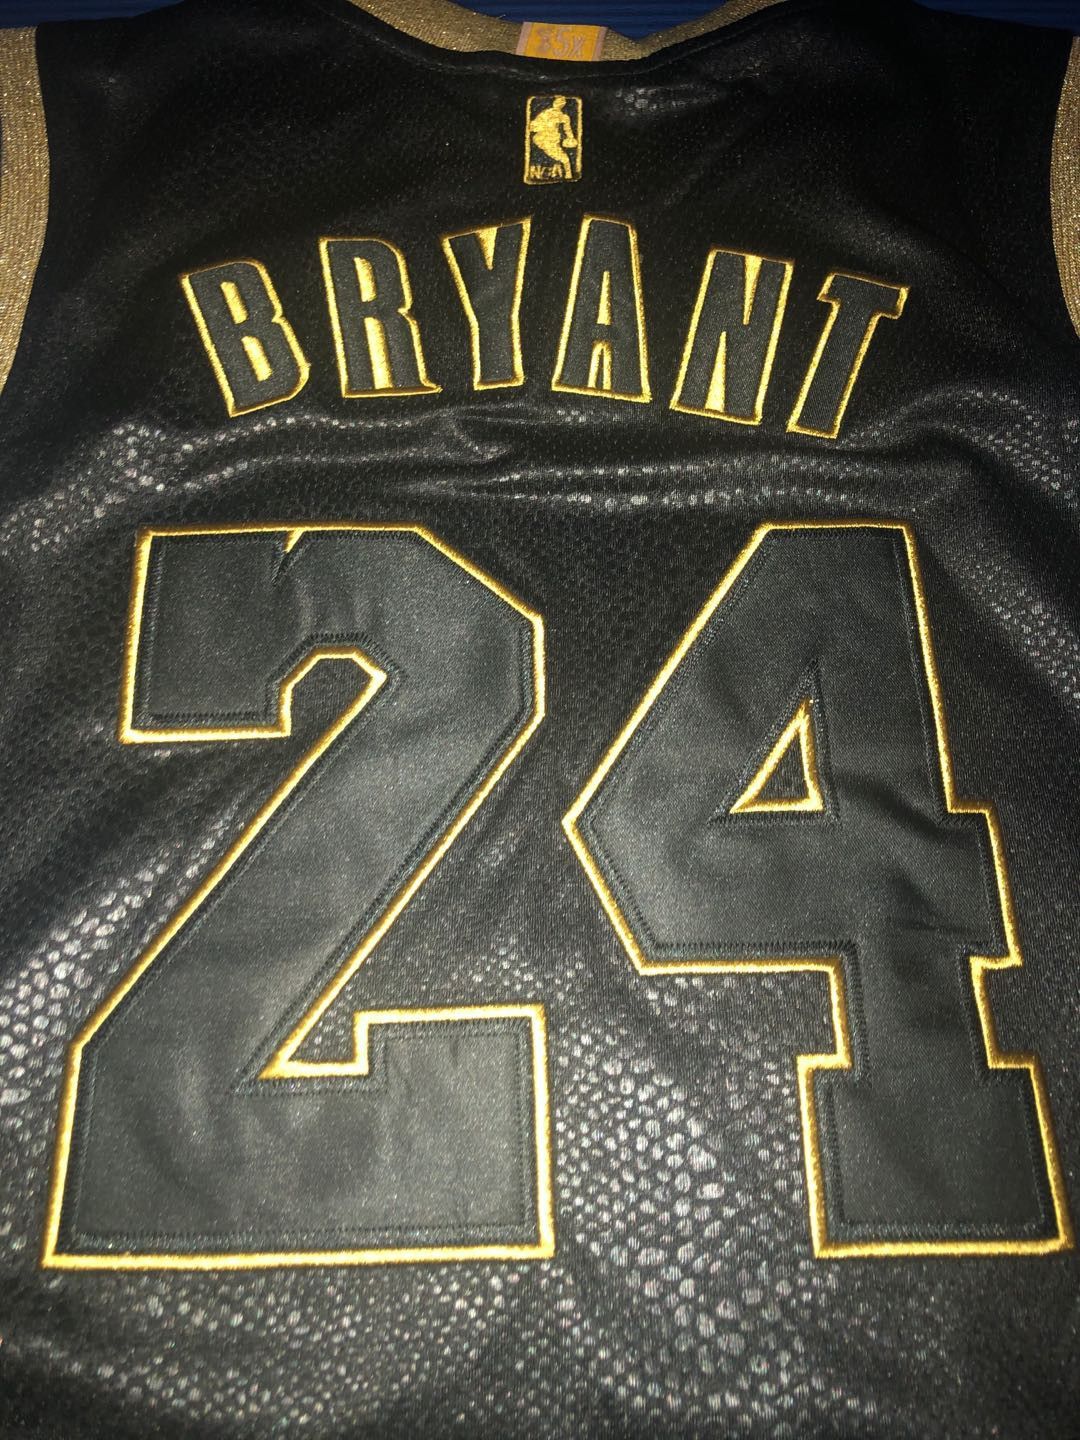 NBA Vintage Kobe Bryant Black Jersey US Size M Size US M / EU 48-50 / 2 - 7 Thumbnail